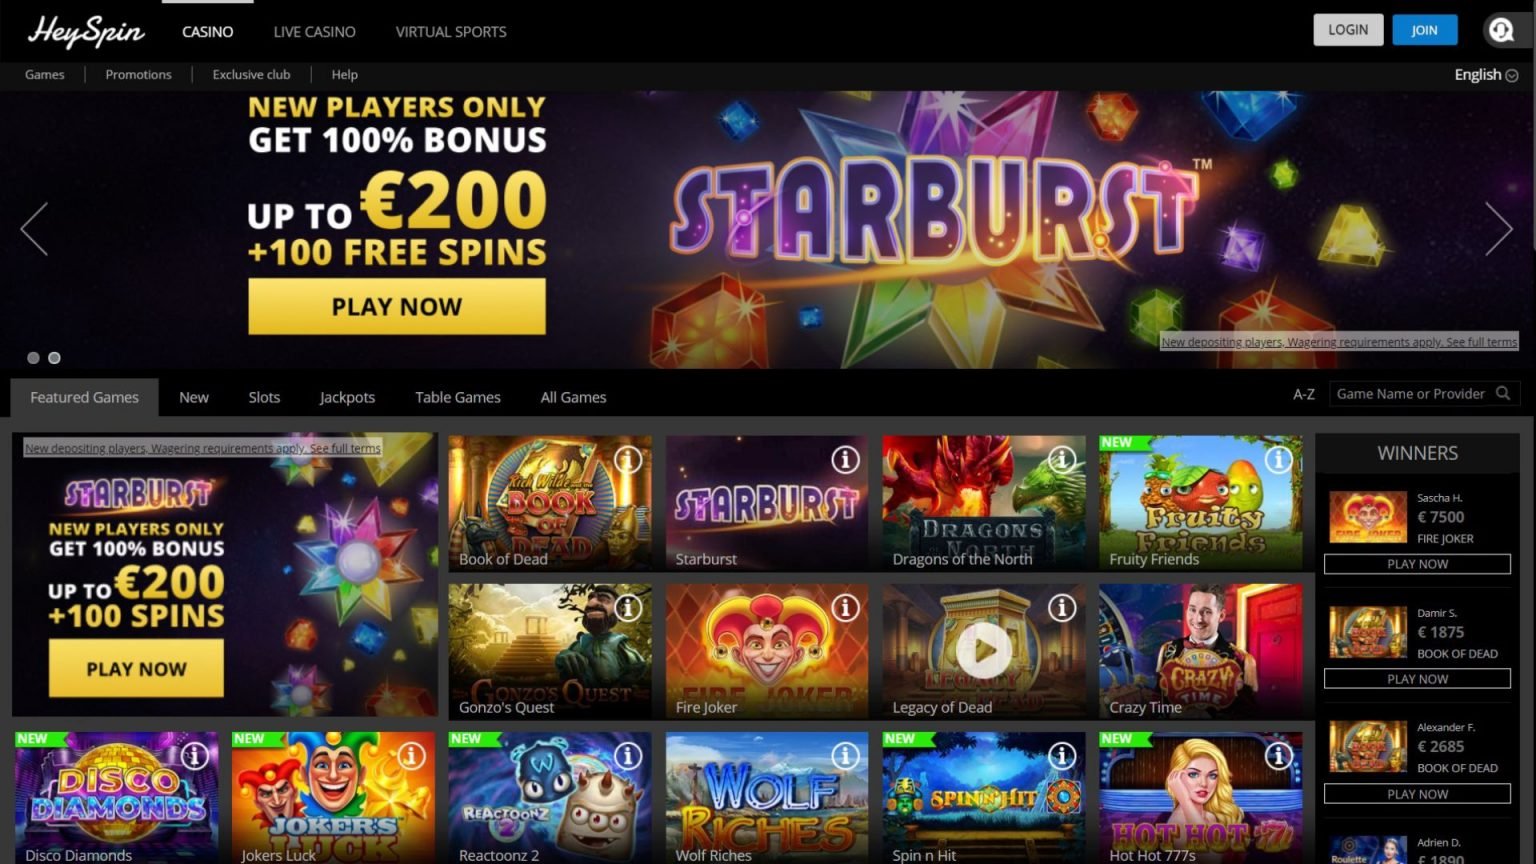 NextGen Gaming Casino Software And Bonus Review